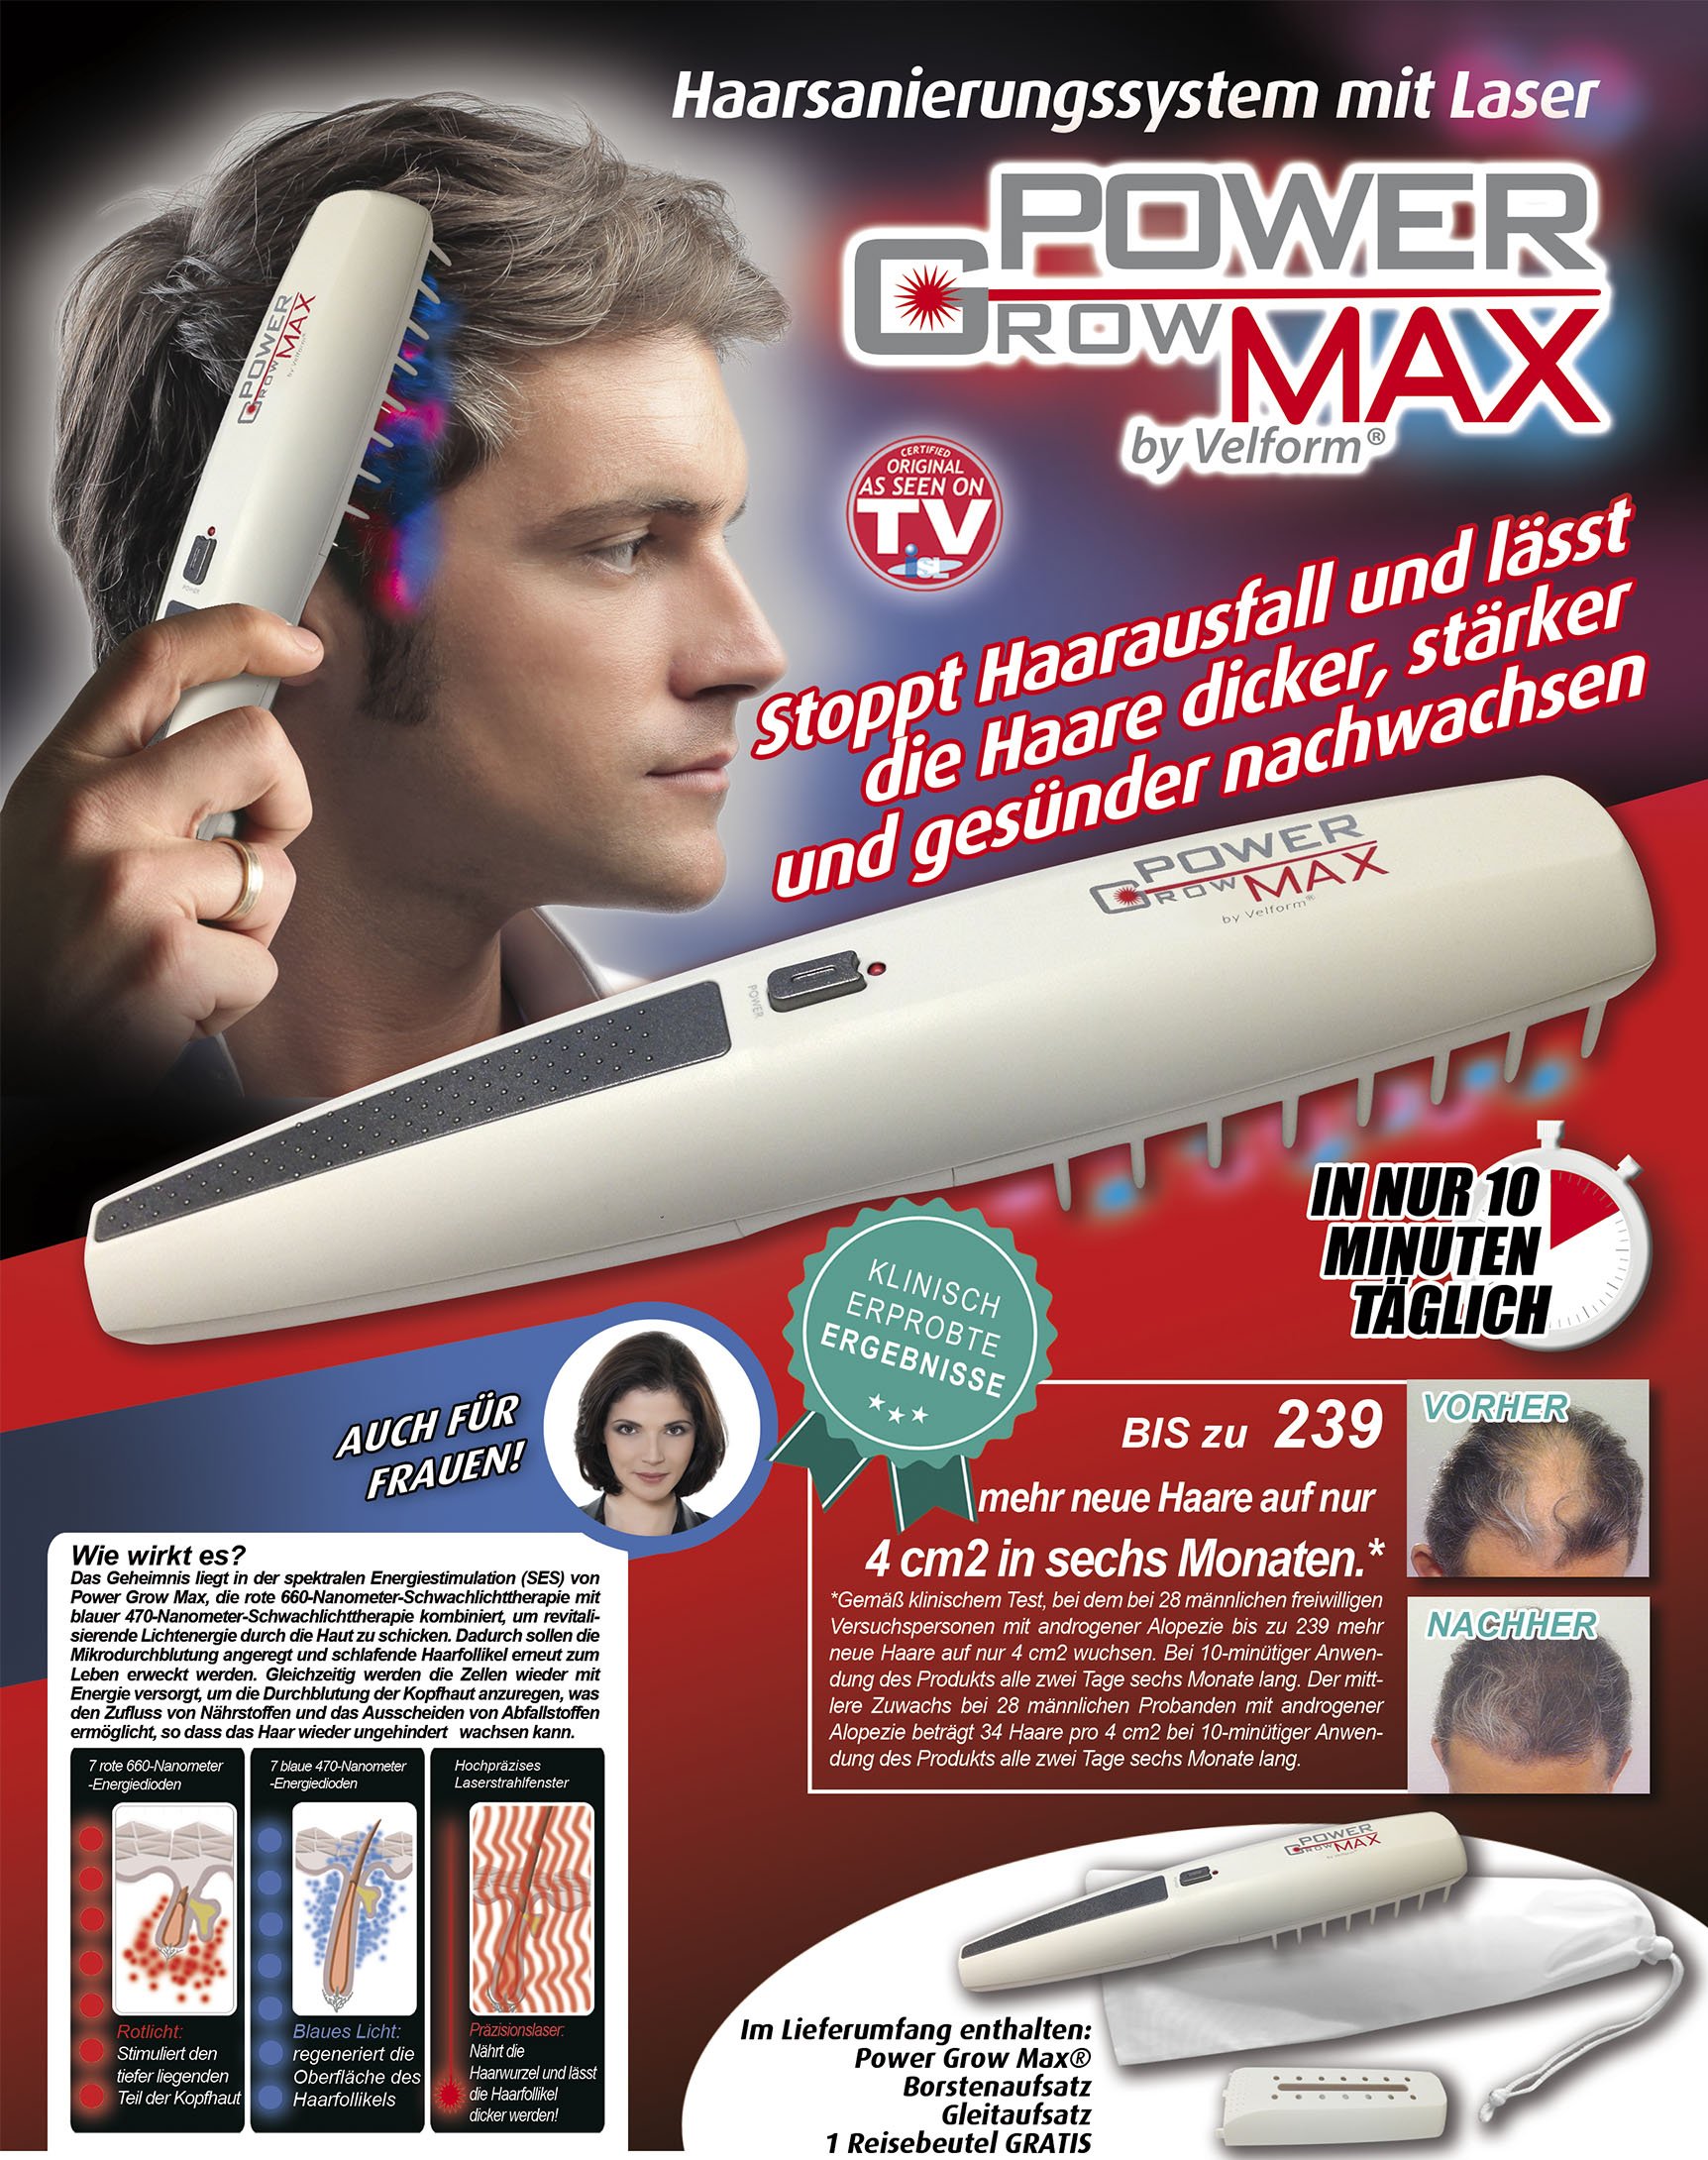 Power Grow Max Haarsanierungssystem - kann Haarausfall stoppen!